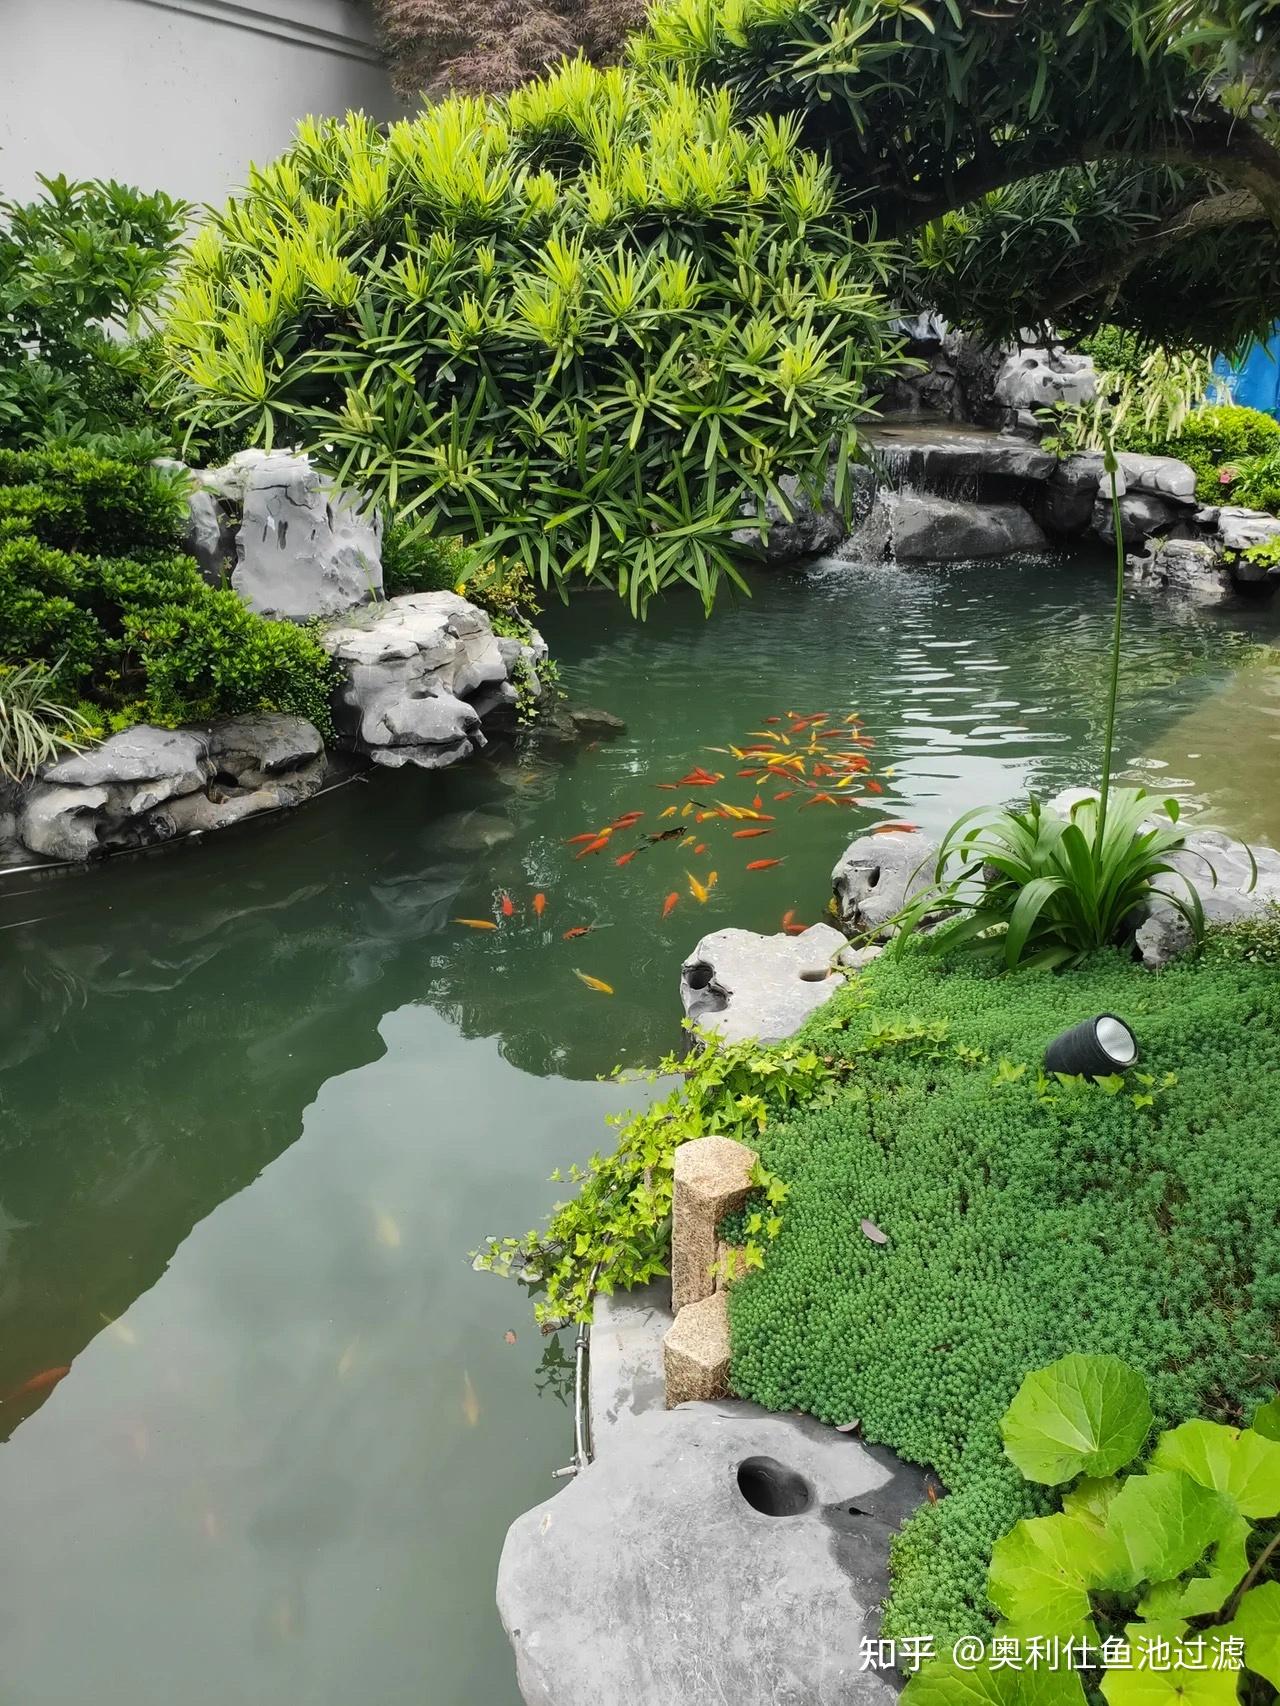 广州市东坦科技有限公司-海鲜鱼缸鱼池,饭店海鲜水池,厨房玻璃鱼缸